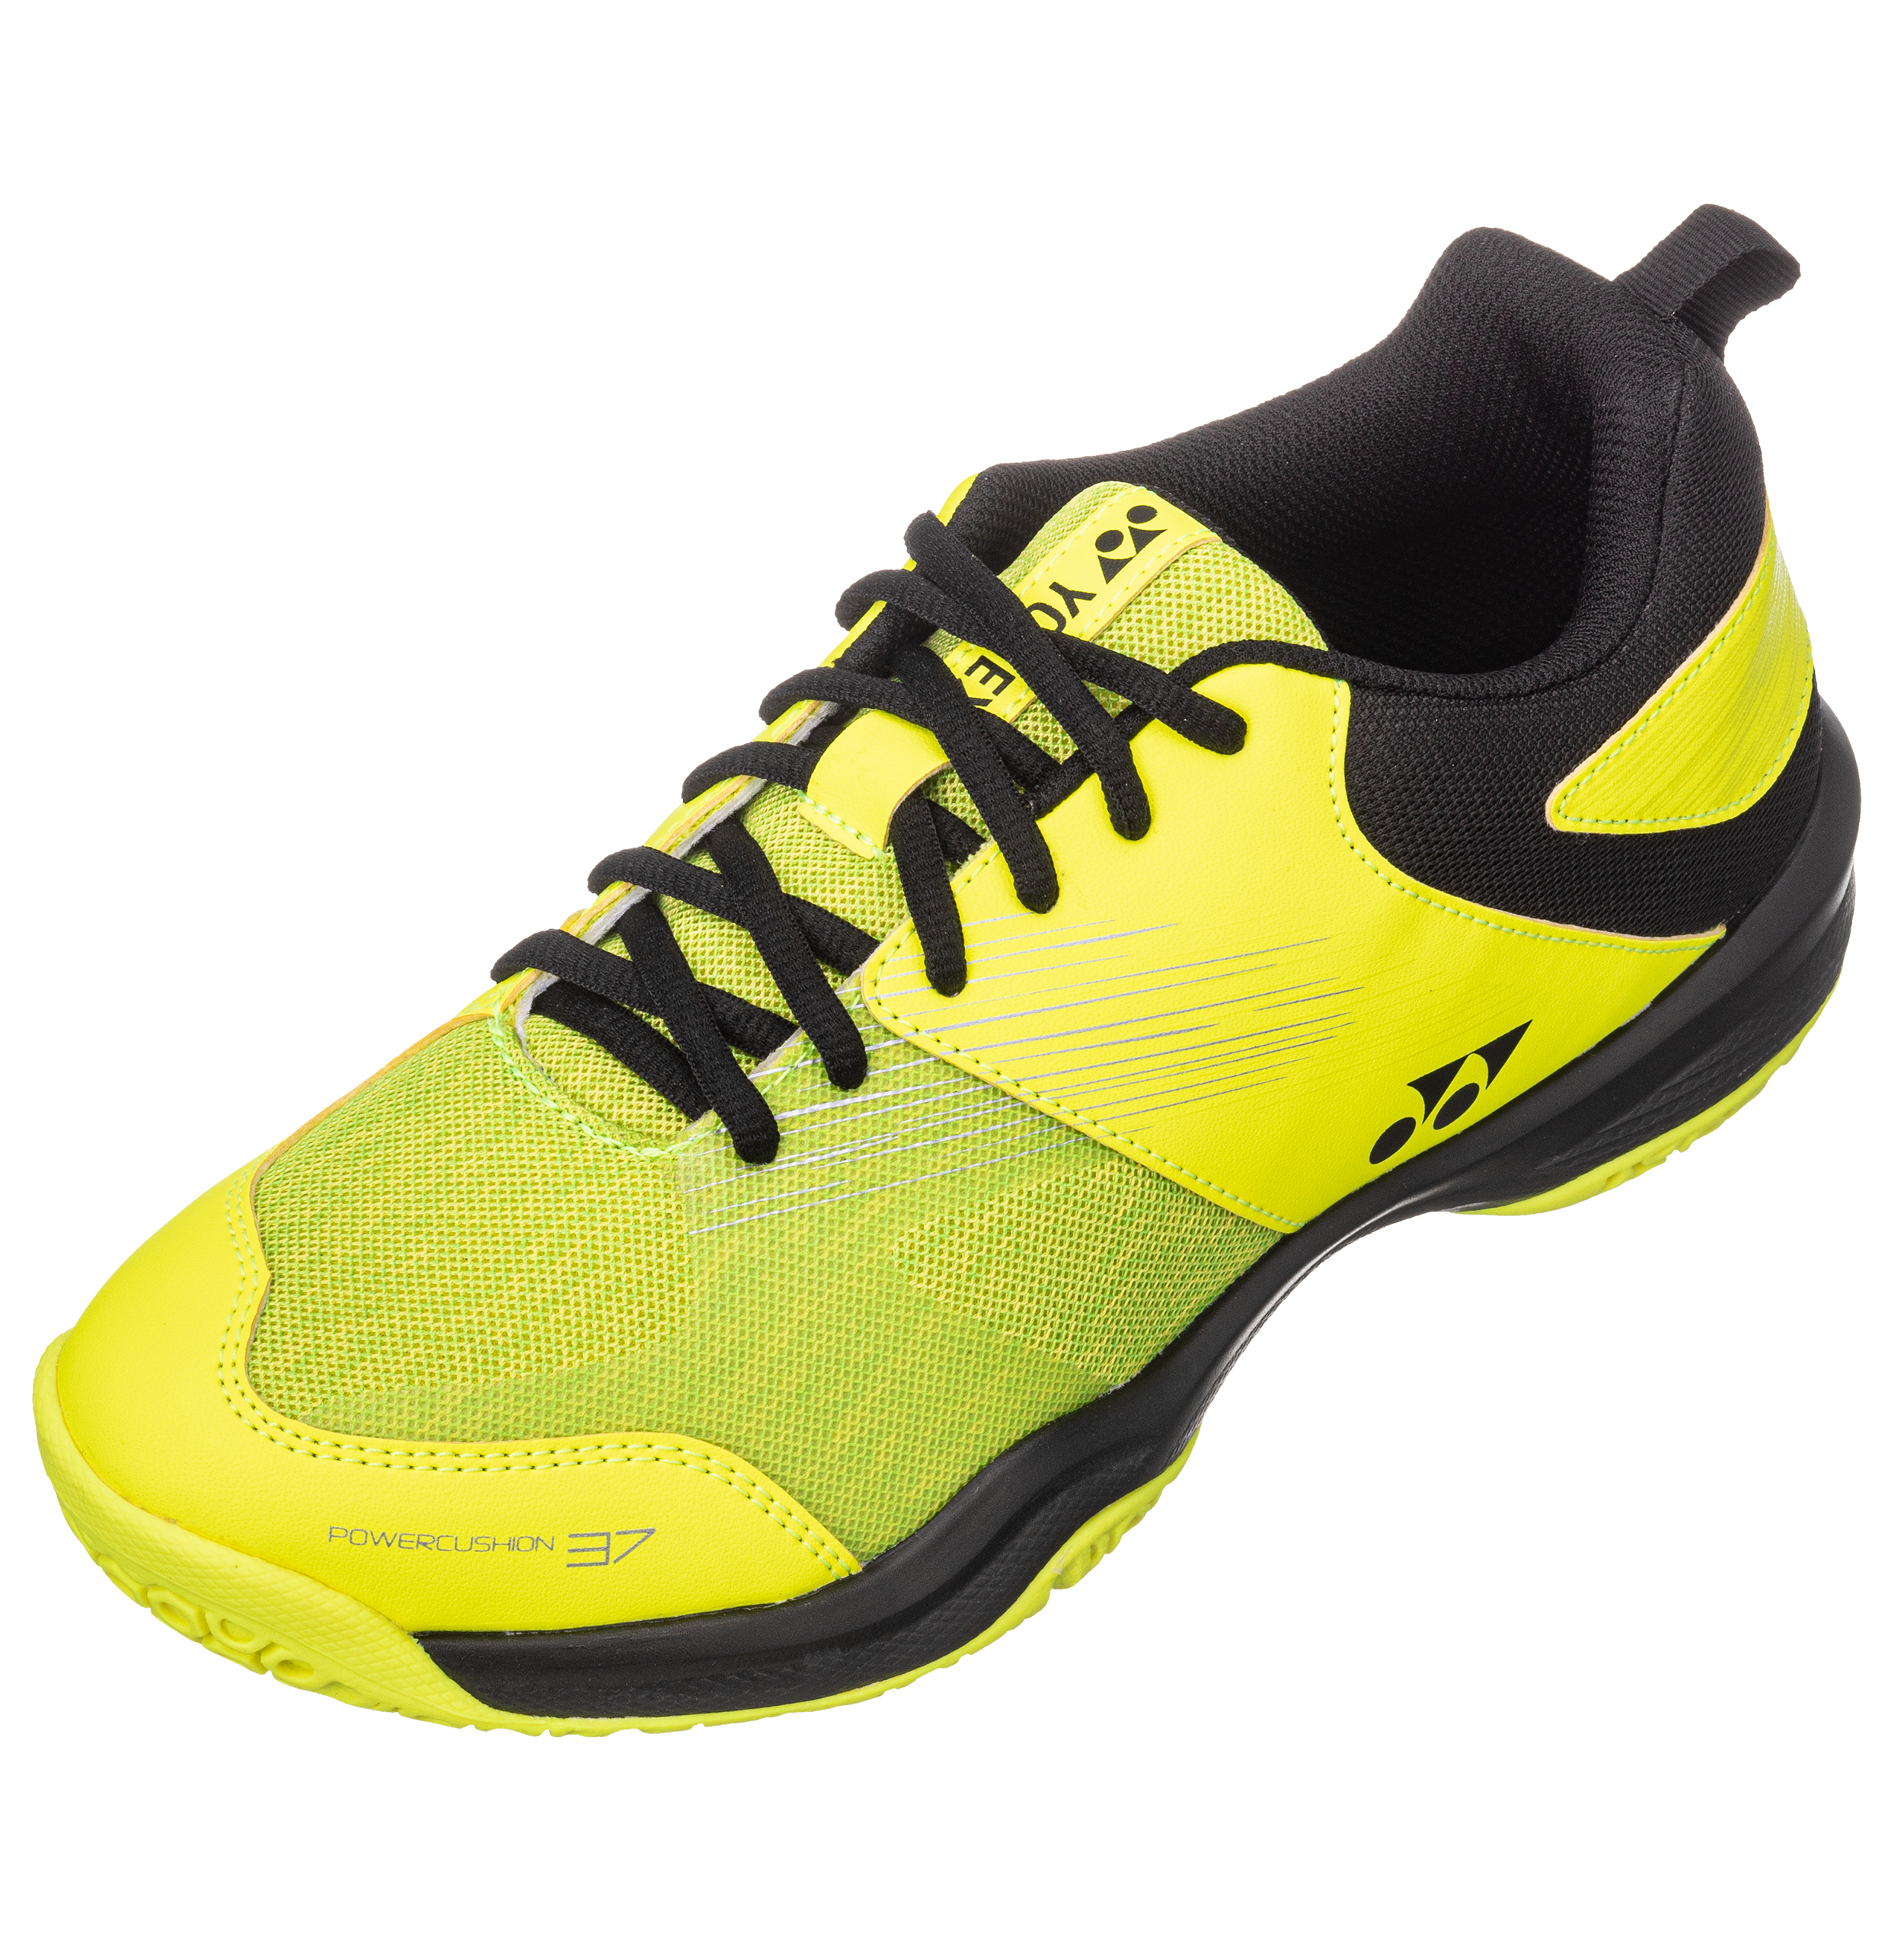 Yonex POWER CUSHION 37 Badminton Shoes SHB37, Bright Yellow, Unisex